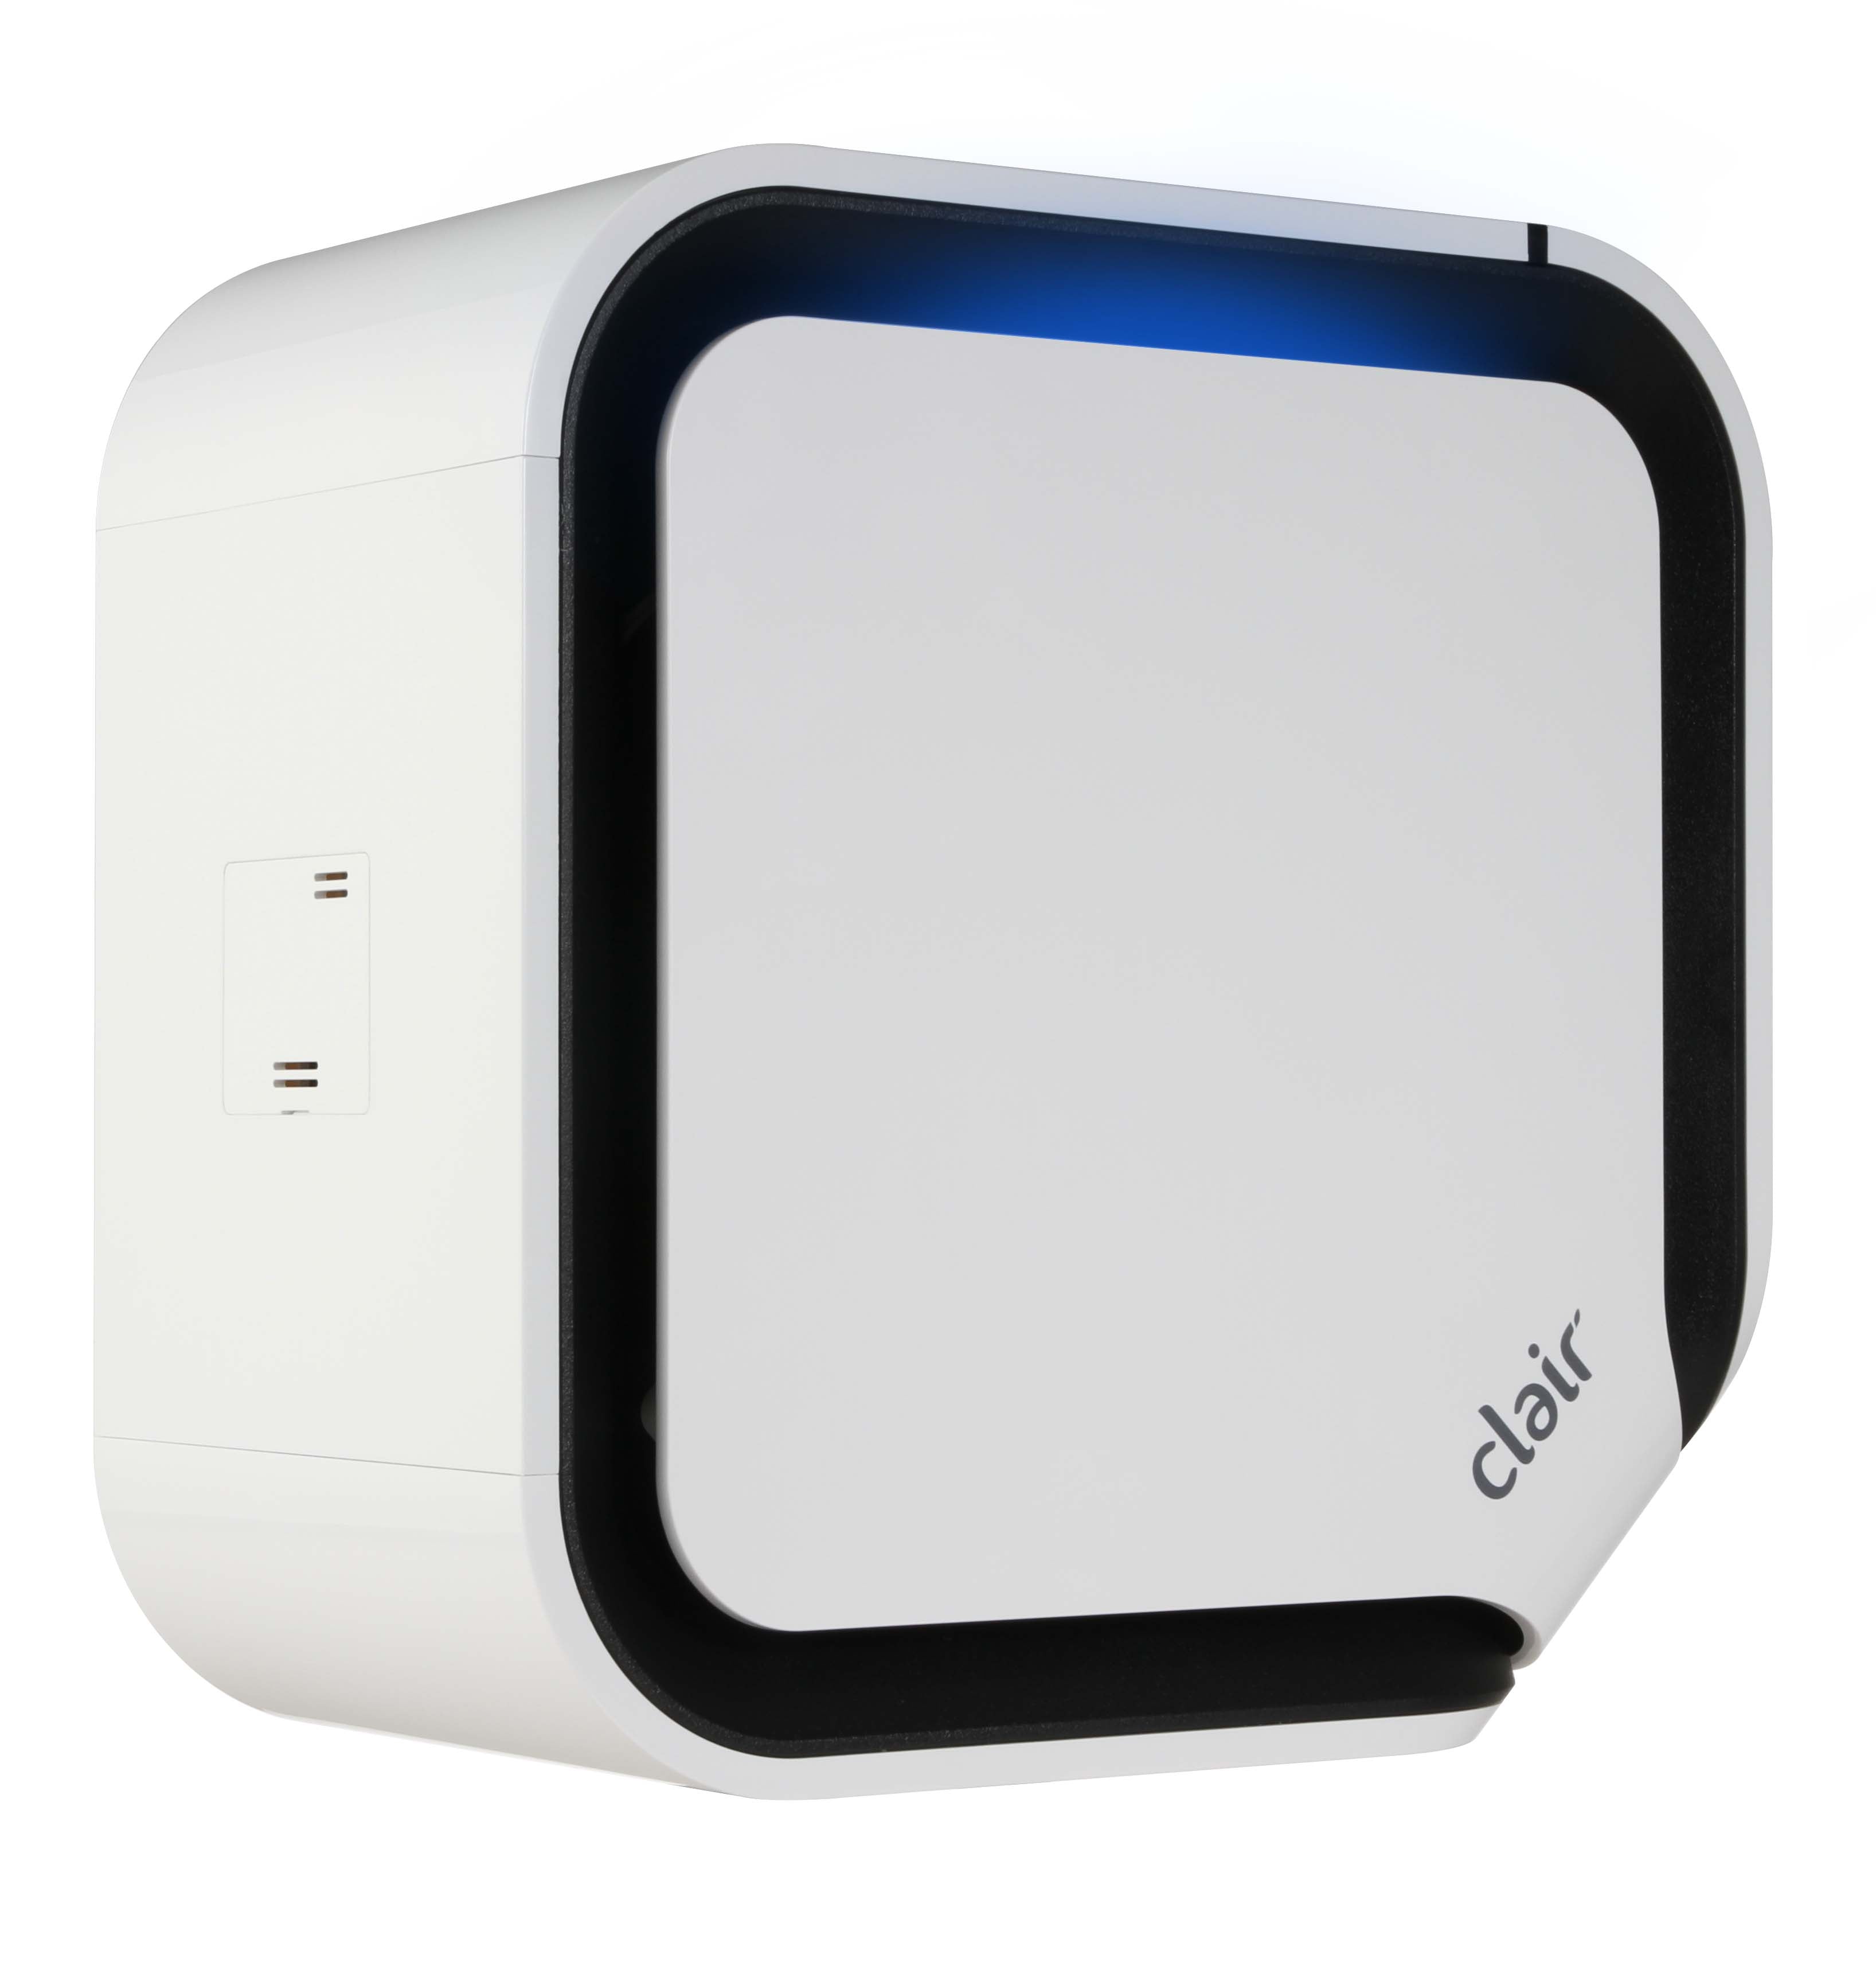 Cube Plus Air Purifier